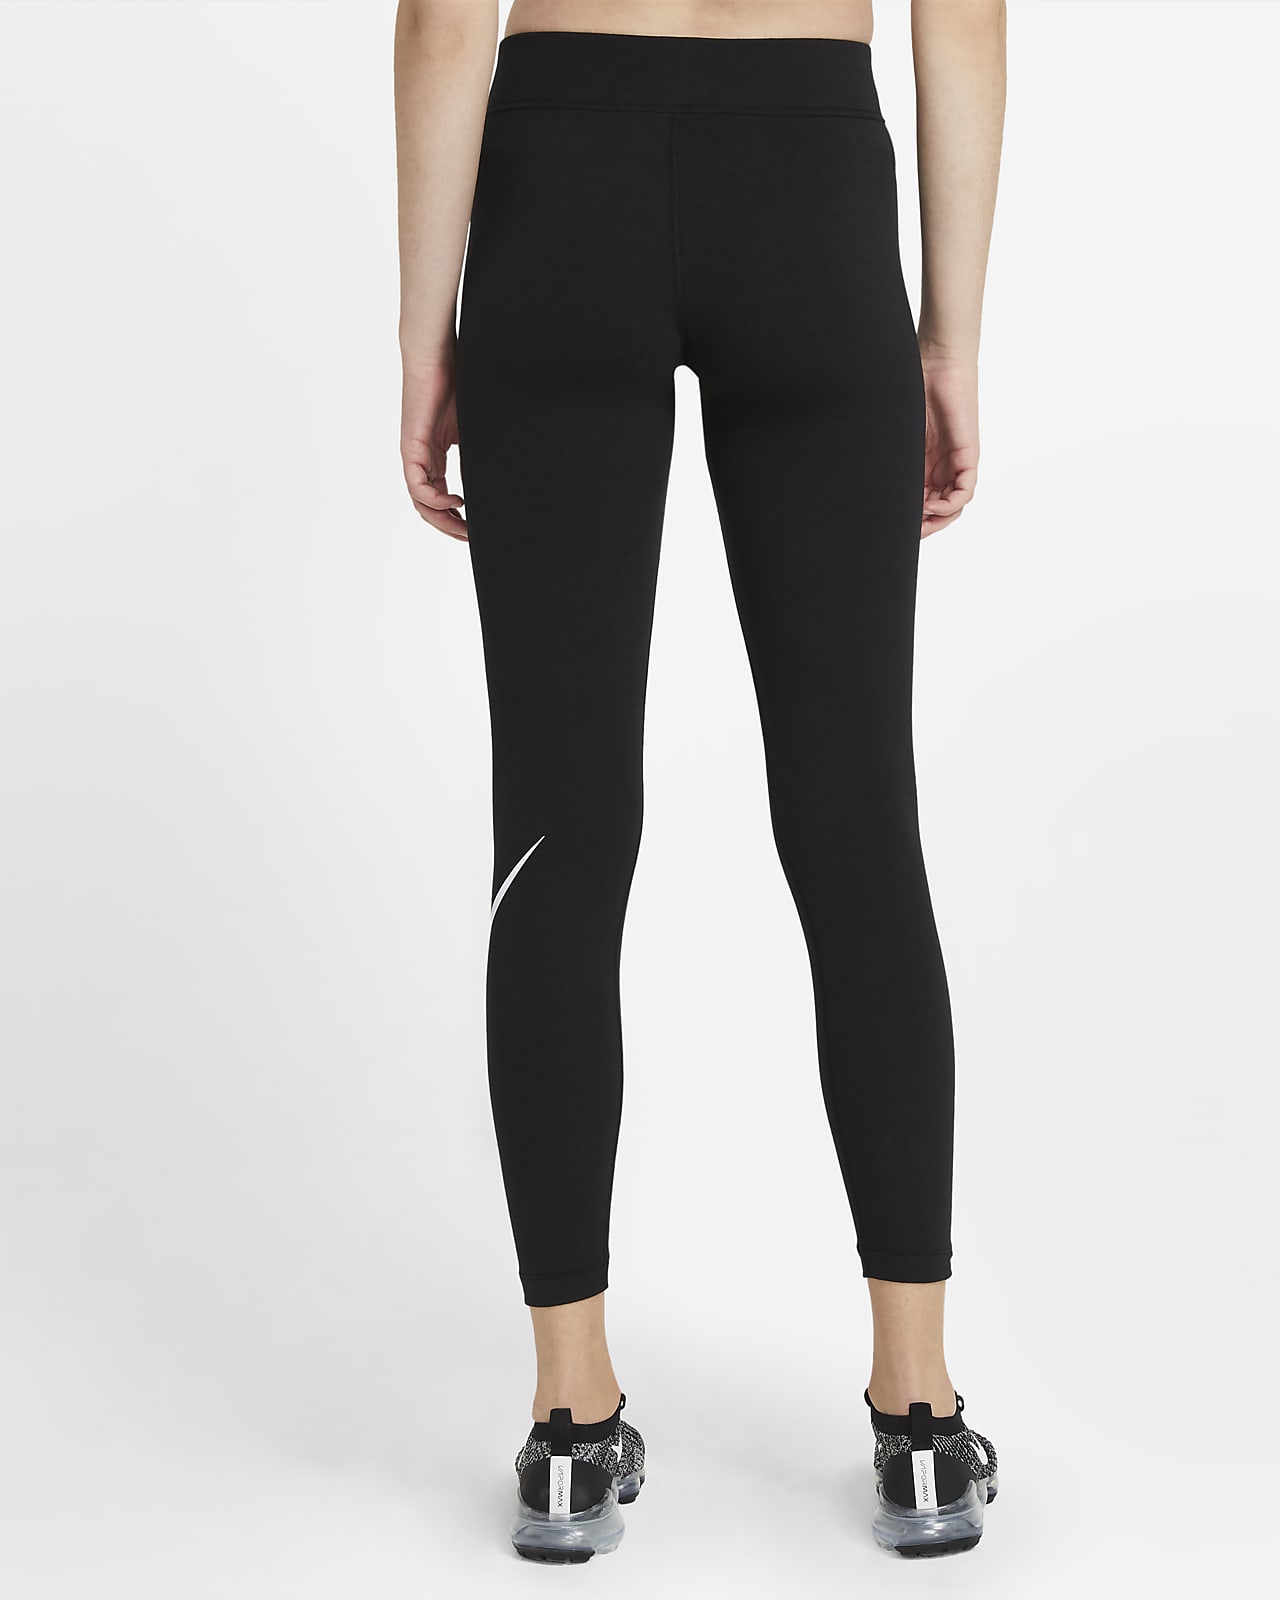 Legging Femme Nike Swoosh Noir CZ8530-010 - Respirant - Fitness - Running